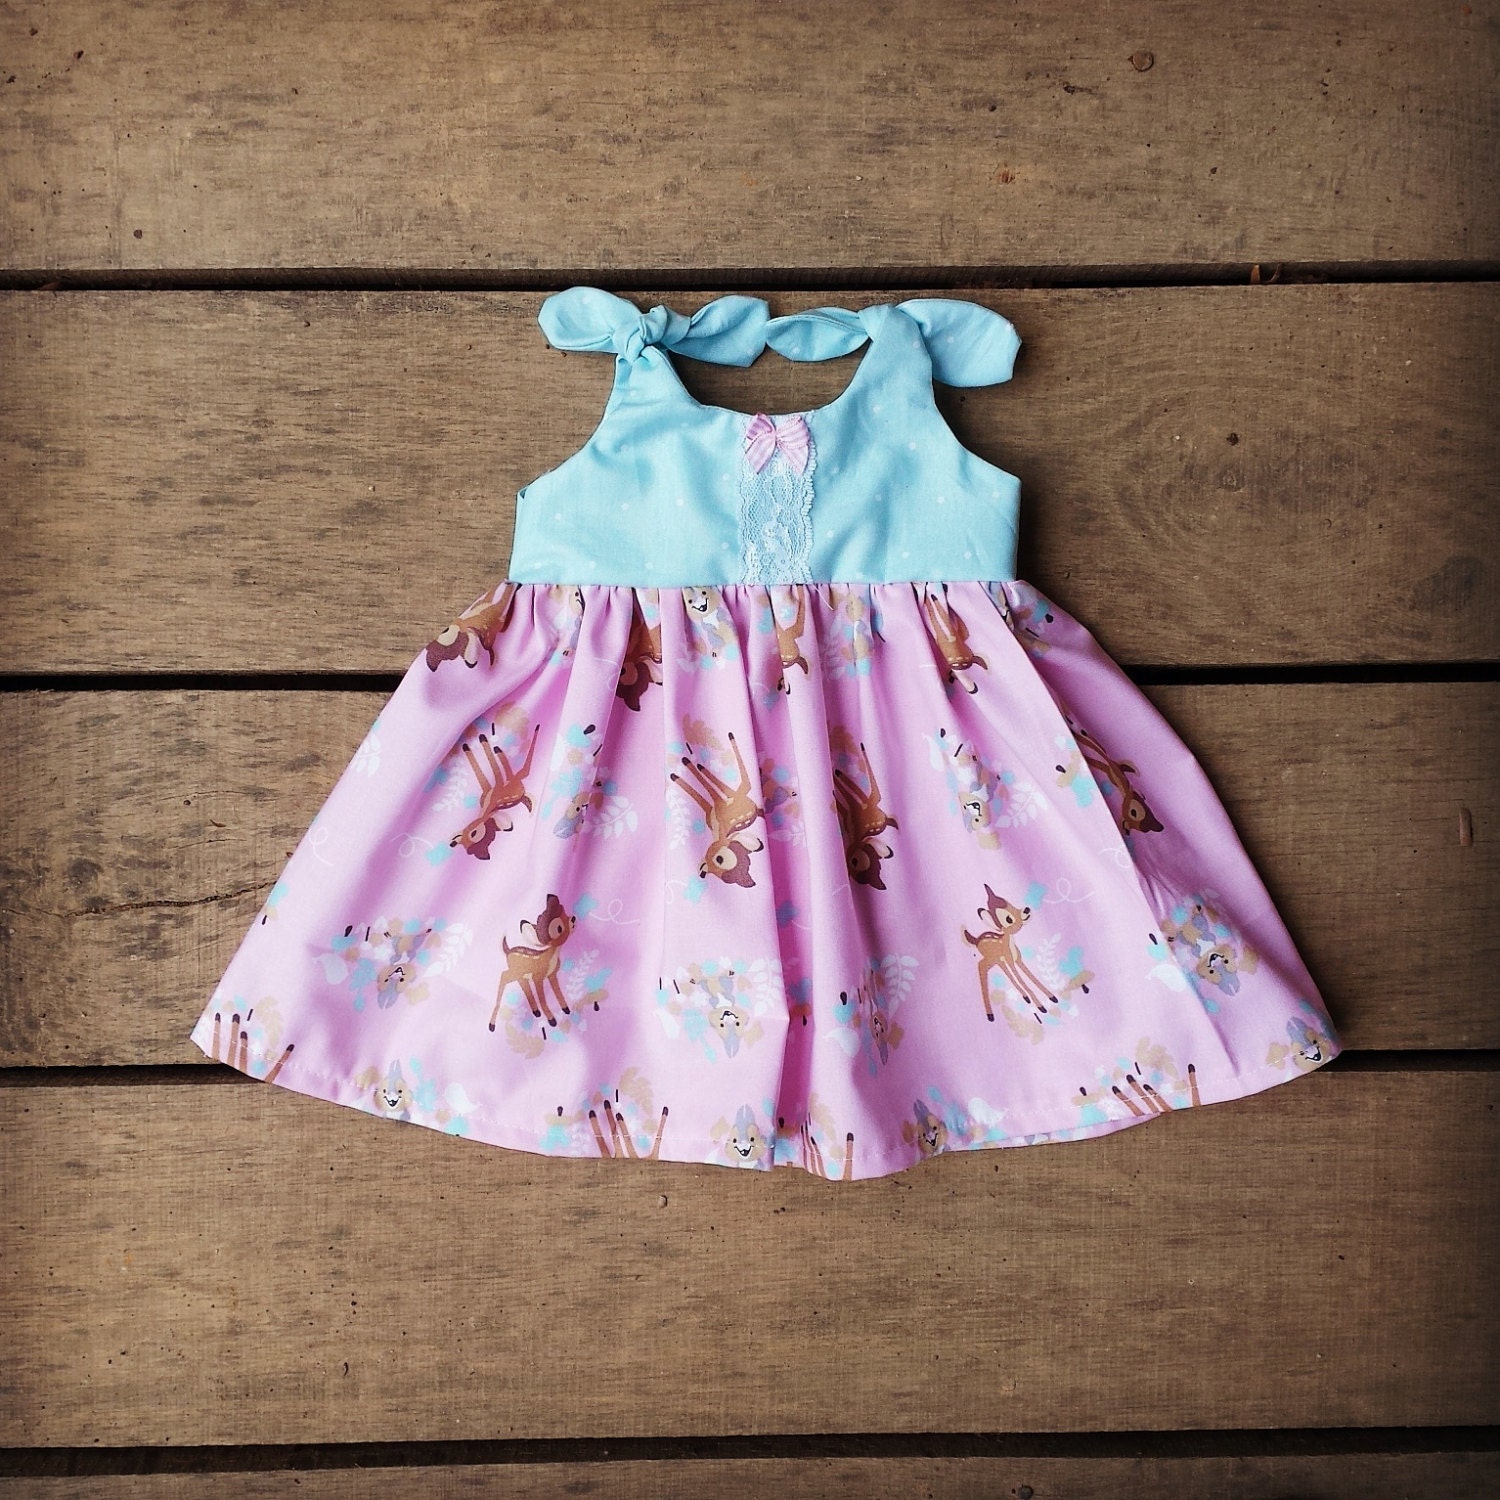 Bambi Dress Thumper Disney inspired dress baby girls